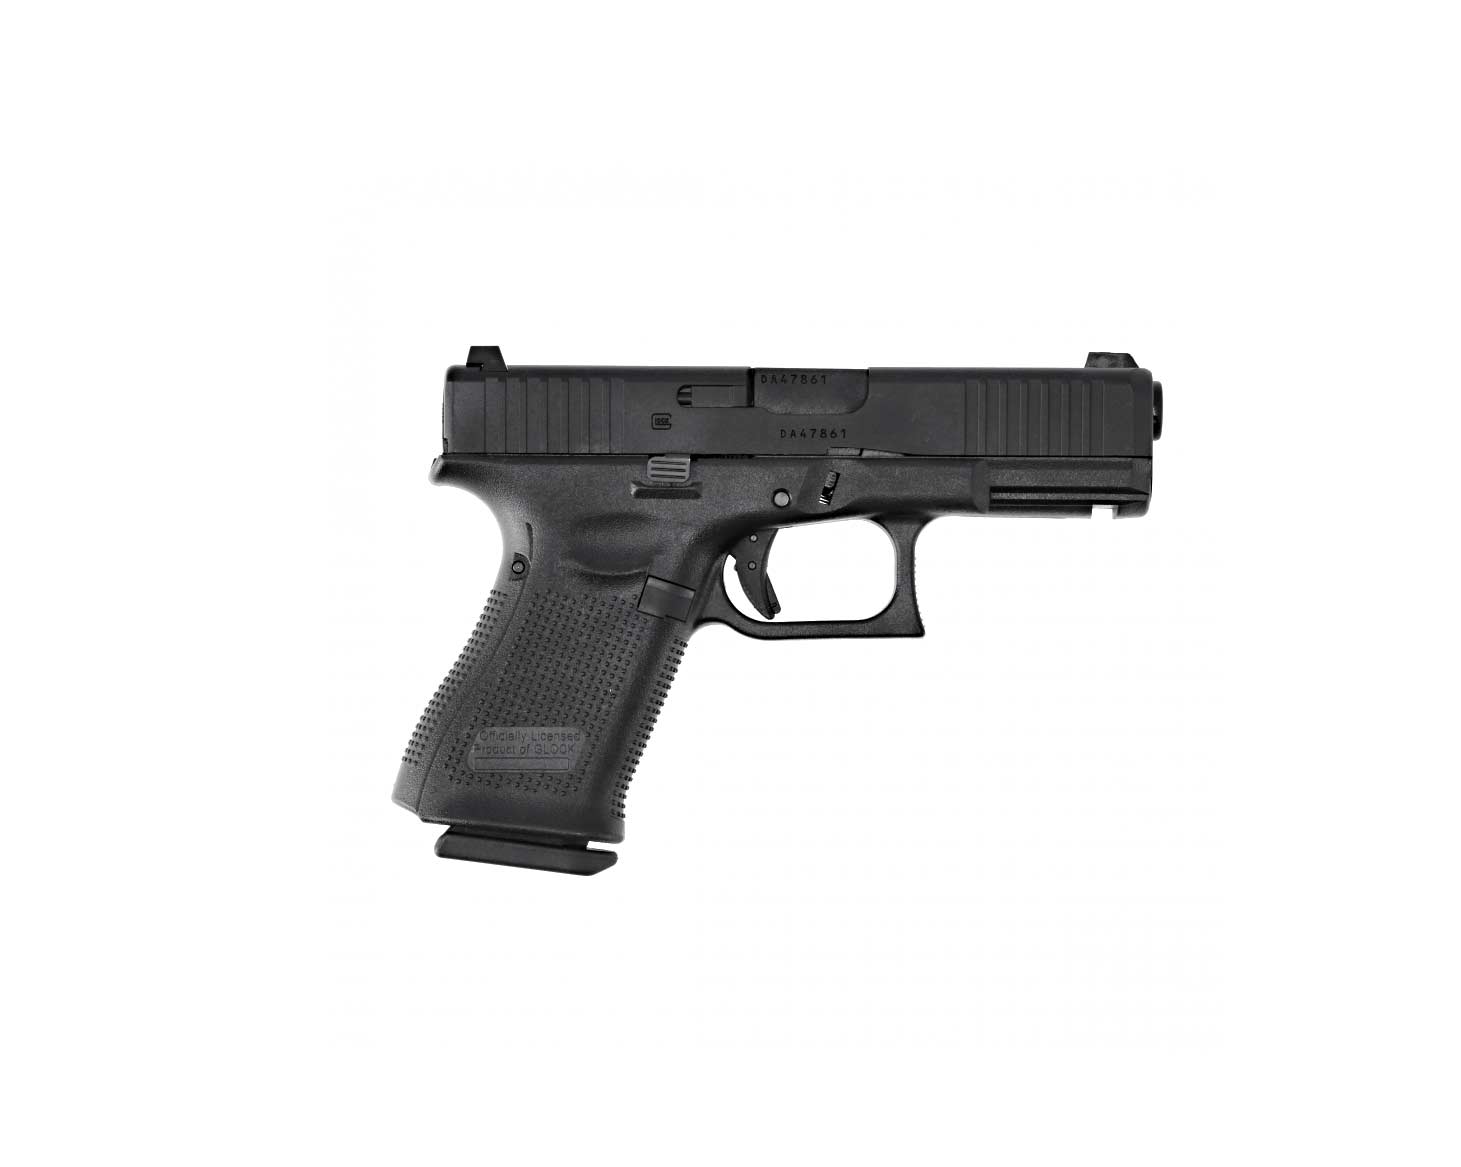 replika pistolet asg glock 19 gen 5 6 mm a7c9480b93ba4059acb54ba257d37146 fbe7ec61